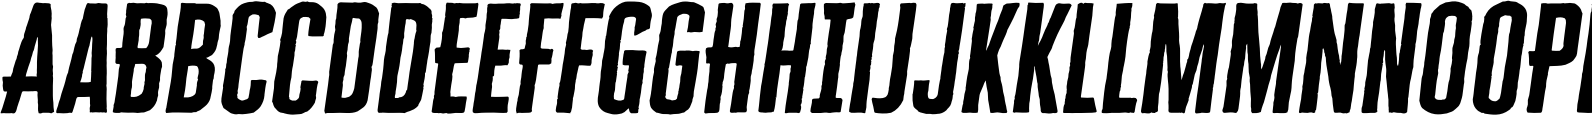 Cheddar Gothic Sans Two Bold Italic